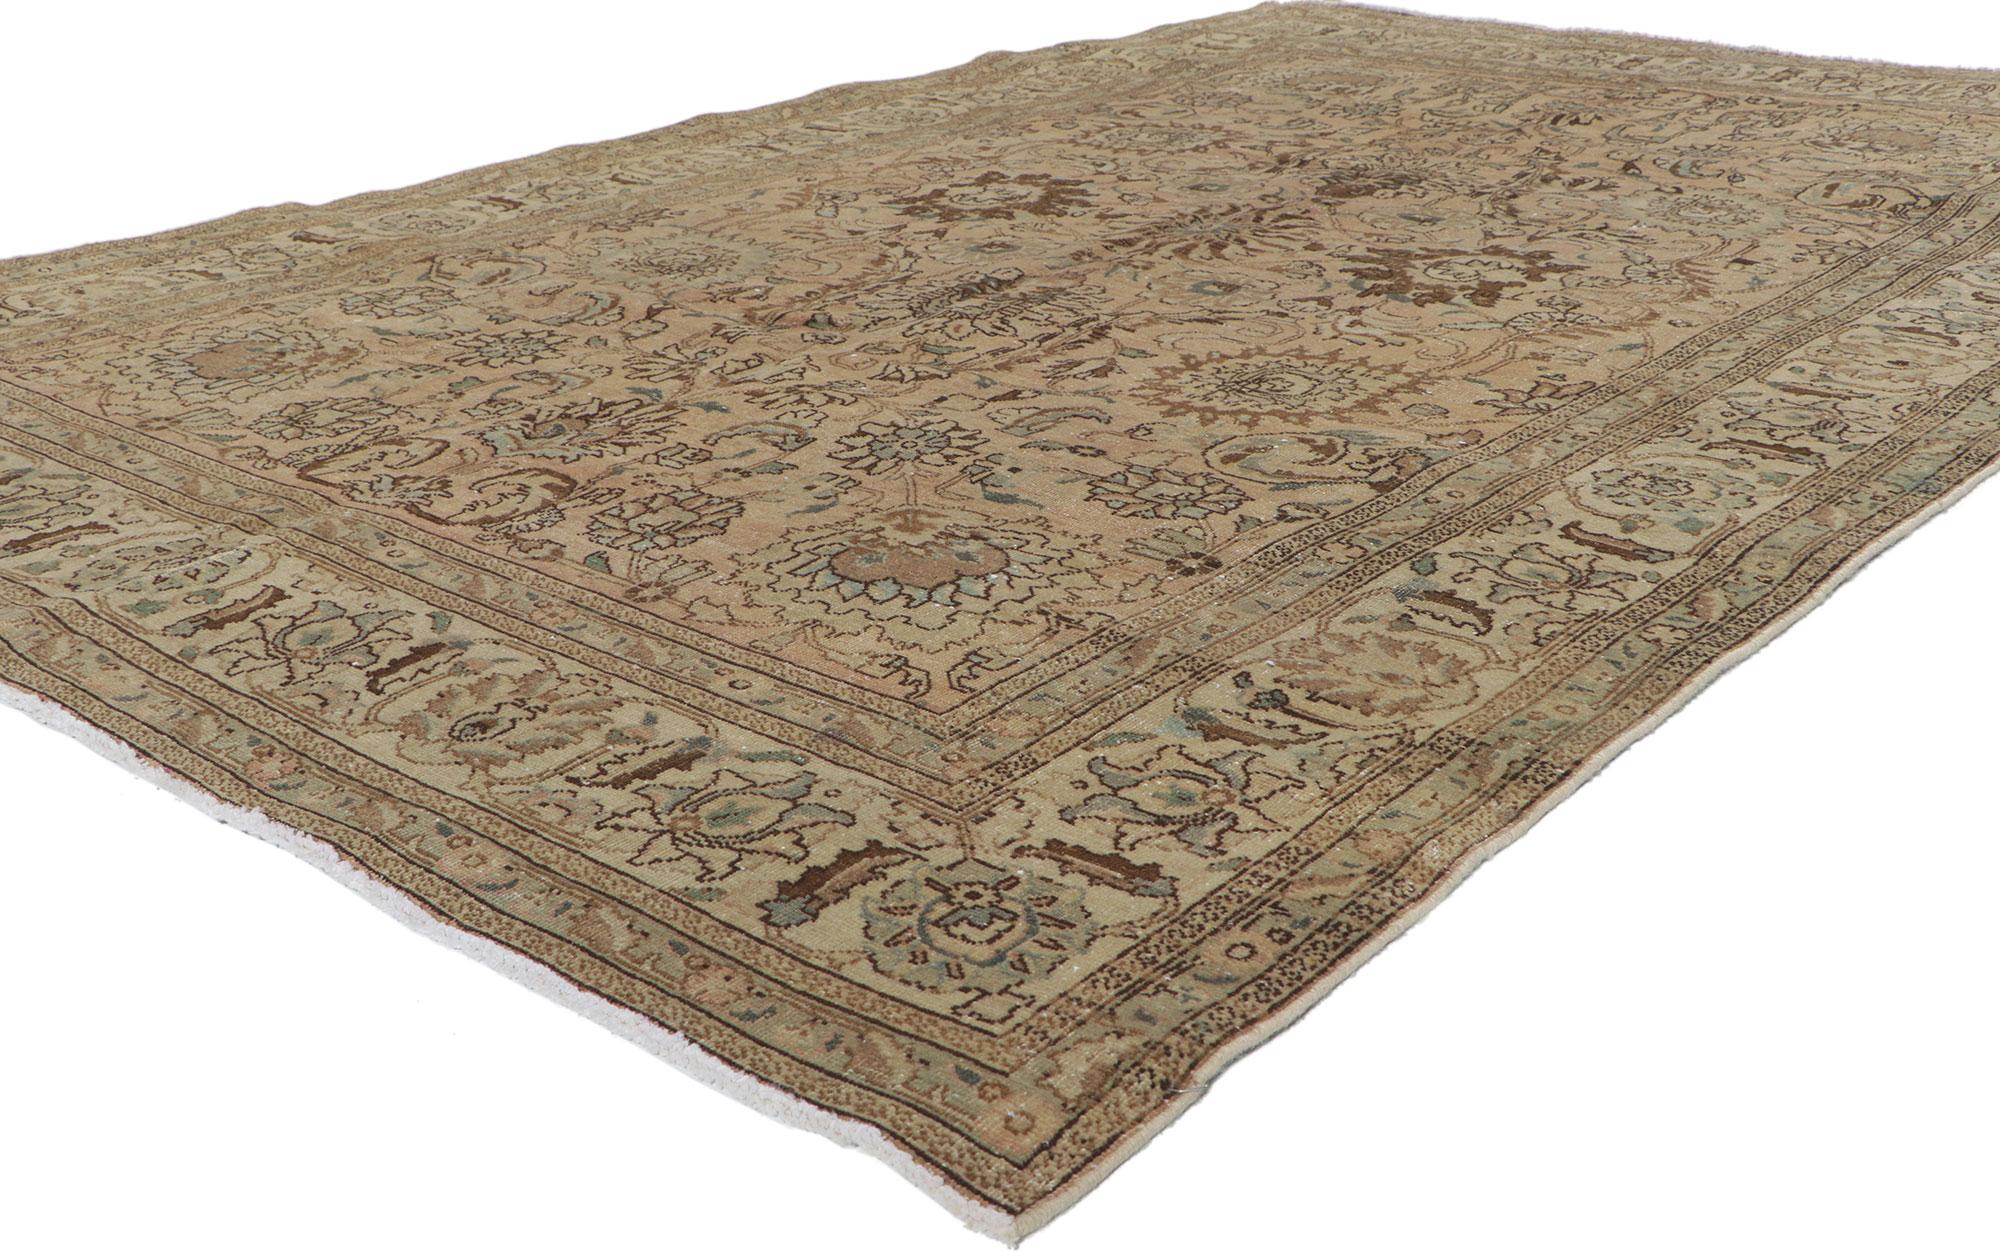 60969 Vintage Persisch Tabriz Teppich 06'04 x 09'06. Dieser handgeknüpfte Teppich aus alter persischer Tabriz-Wolle ist warm und einladend. Er zeigt ein botanisches Muster, das von einer klassischen Herati-Bordüre umgeben ist. Mit seinem zeitlosen